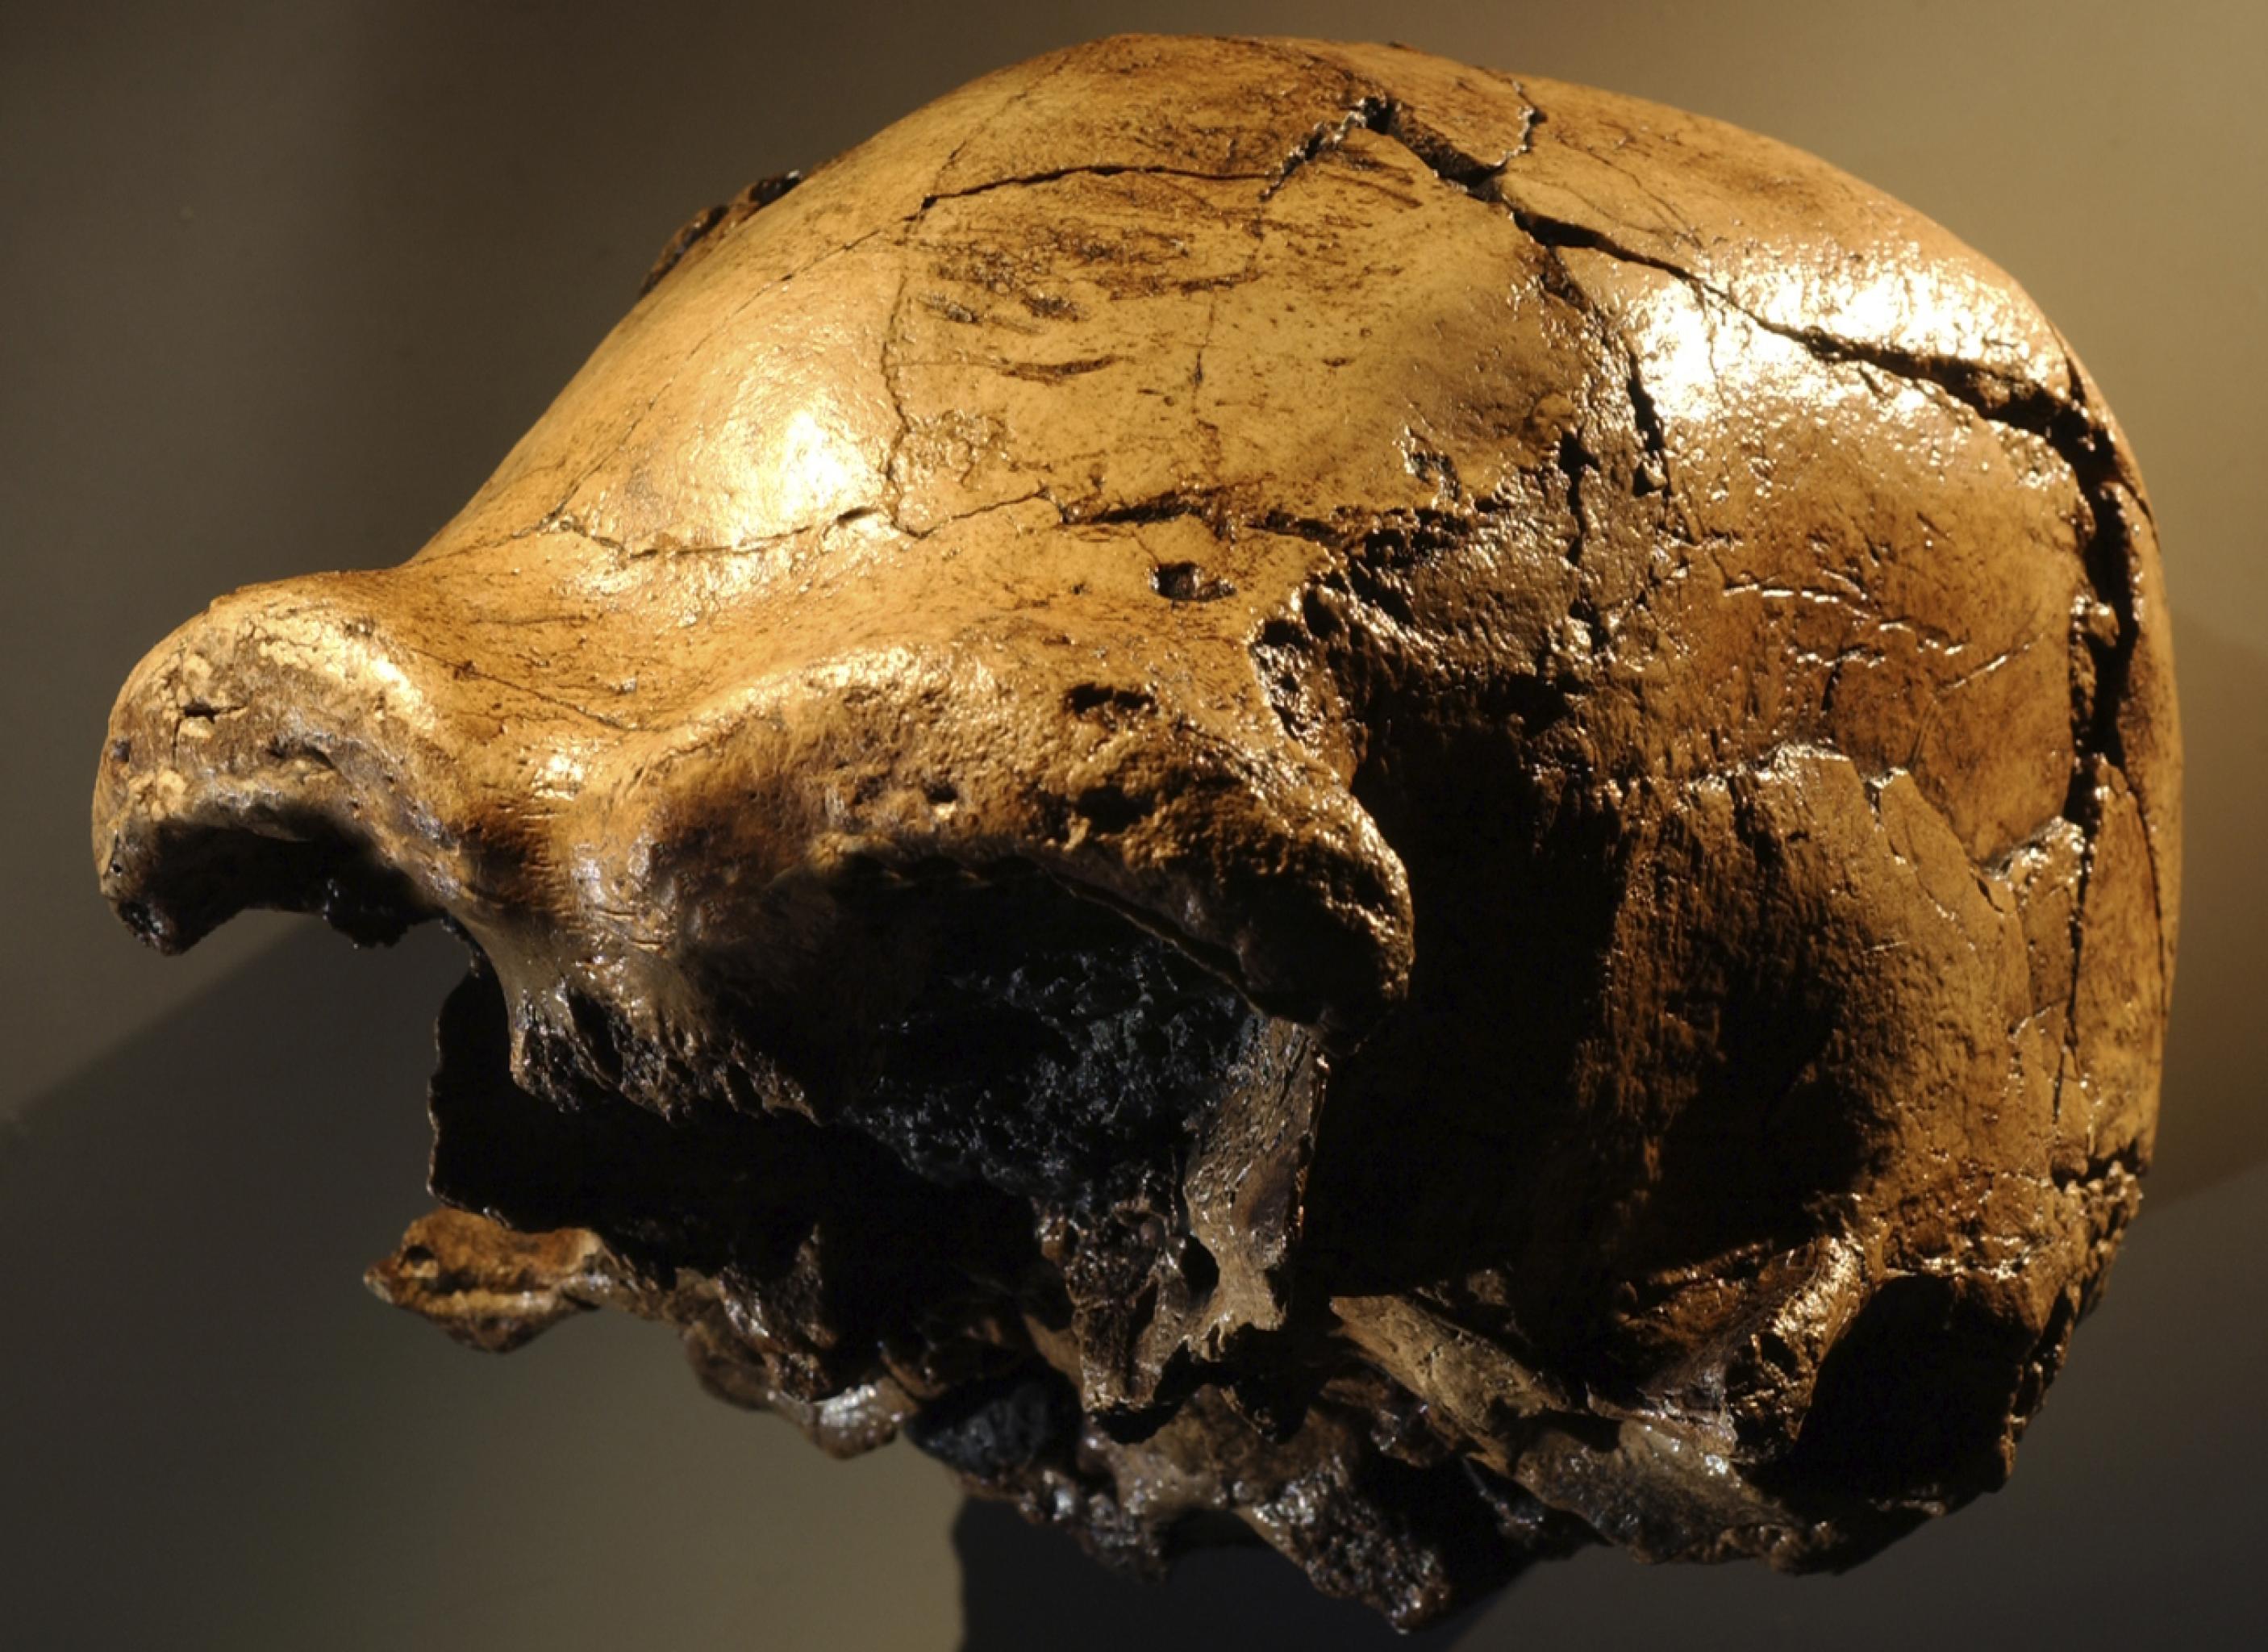 Der fossile, gelbbraun glänzende Schädel eines Urmenschen ist – halb von vorn, halb von der linken Seite – zu sehen. Eindrucksvoll sind die gewaltigen knöchernen Wülste über den Augenhöhlen. Der Hirnschädel ist fast komplett erhalten, doch vorne fehlen Nasenpartie, Wangen, Ober- und Unterkiefer.